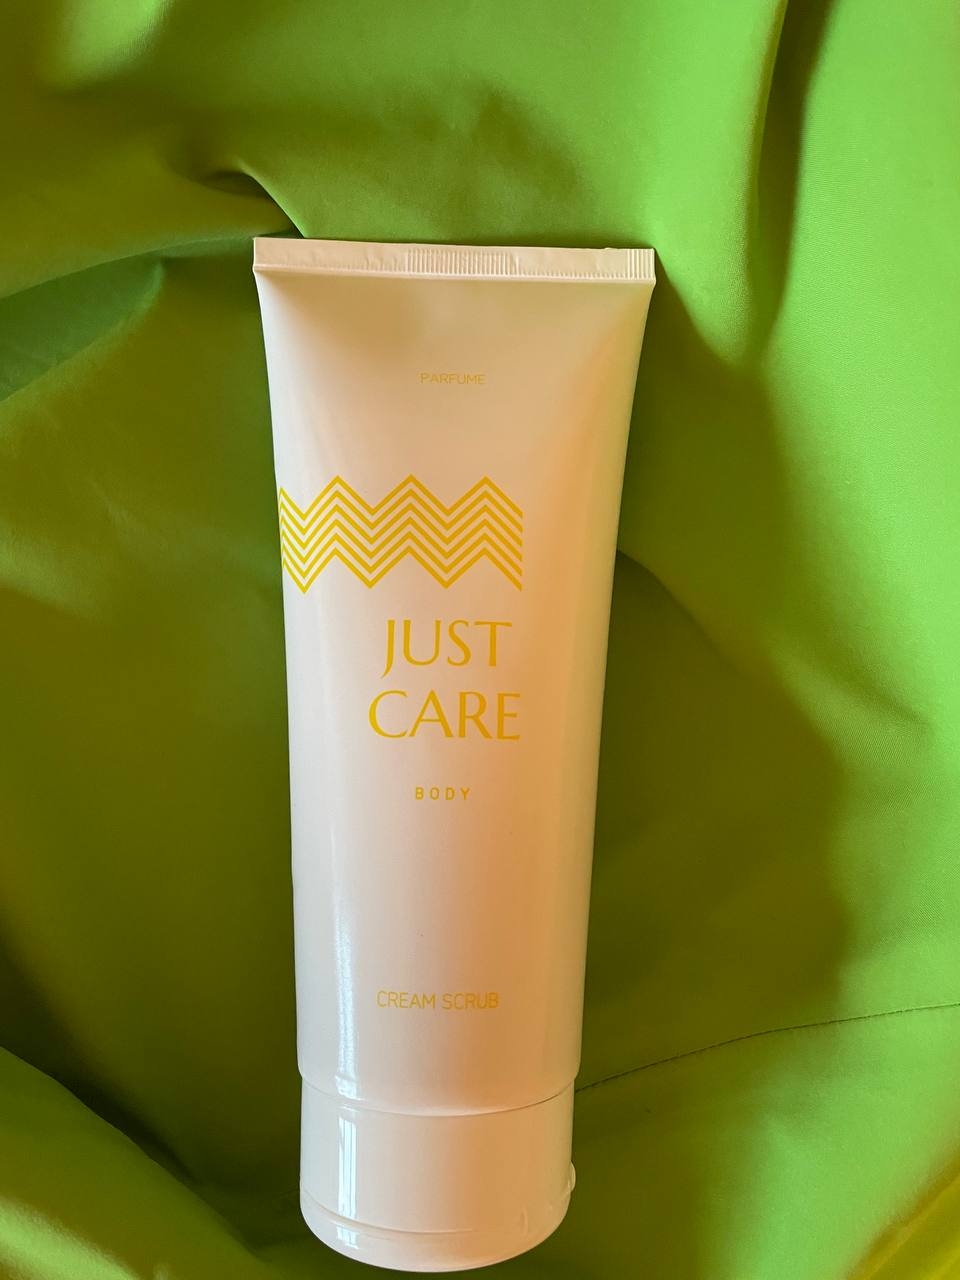 Just Care - Cream scrub parfume